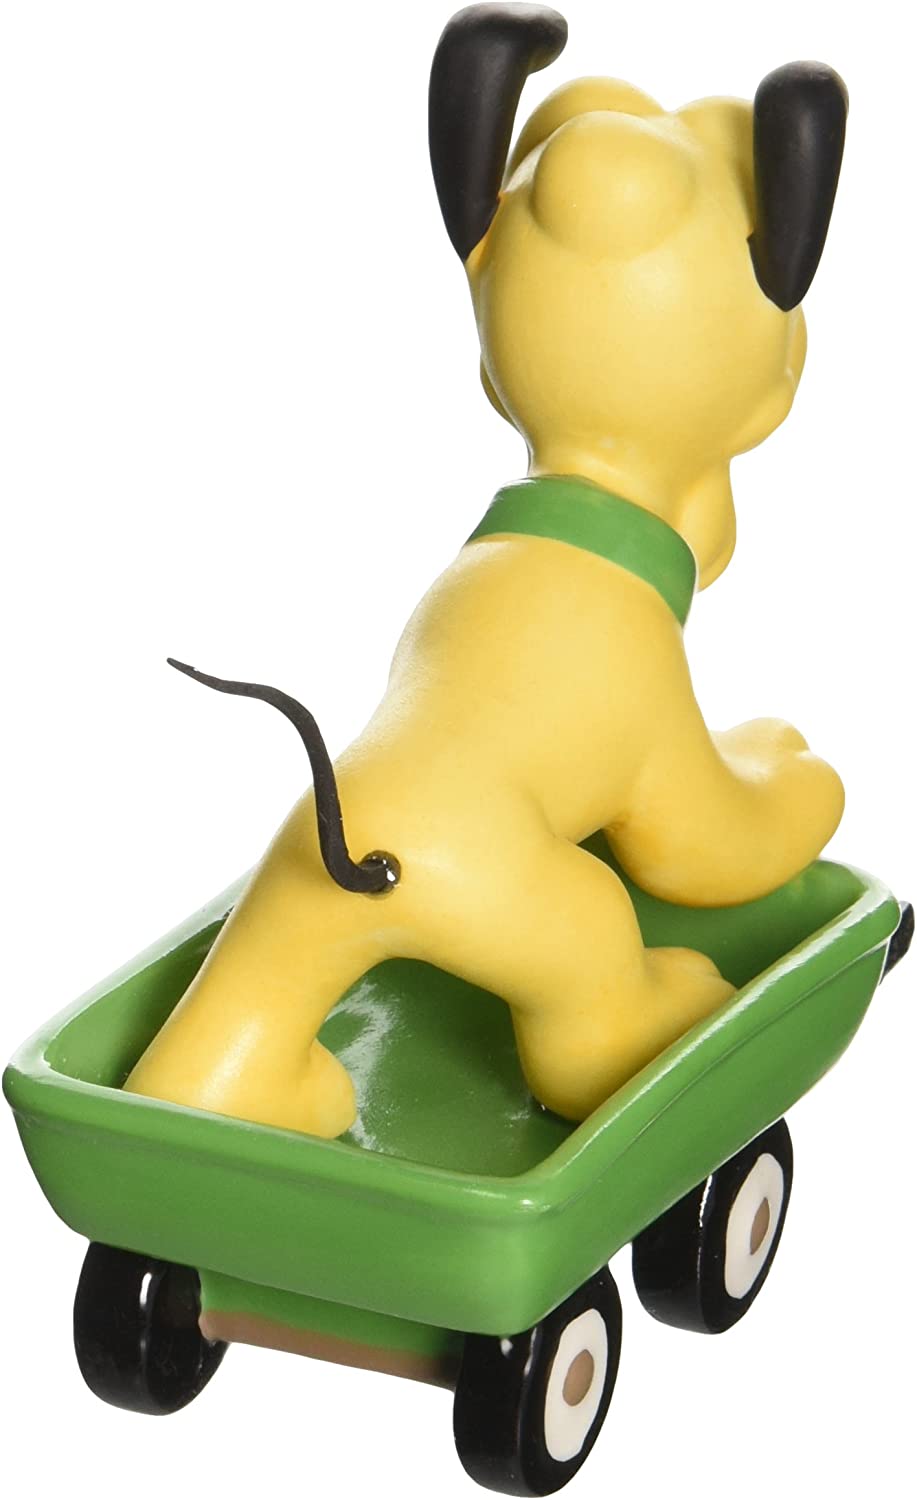 Pluto in Wagon Disney Precious Moments Figurine